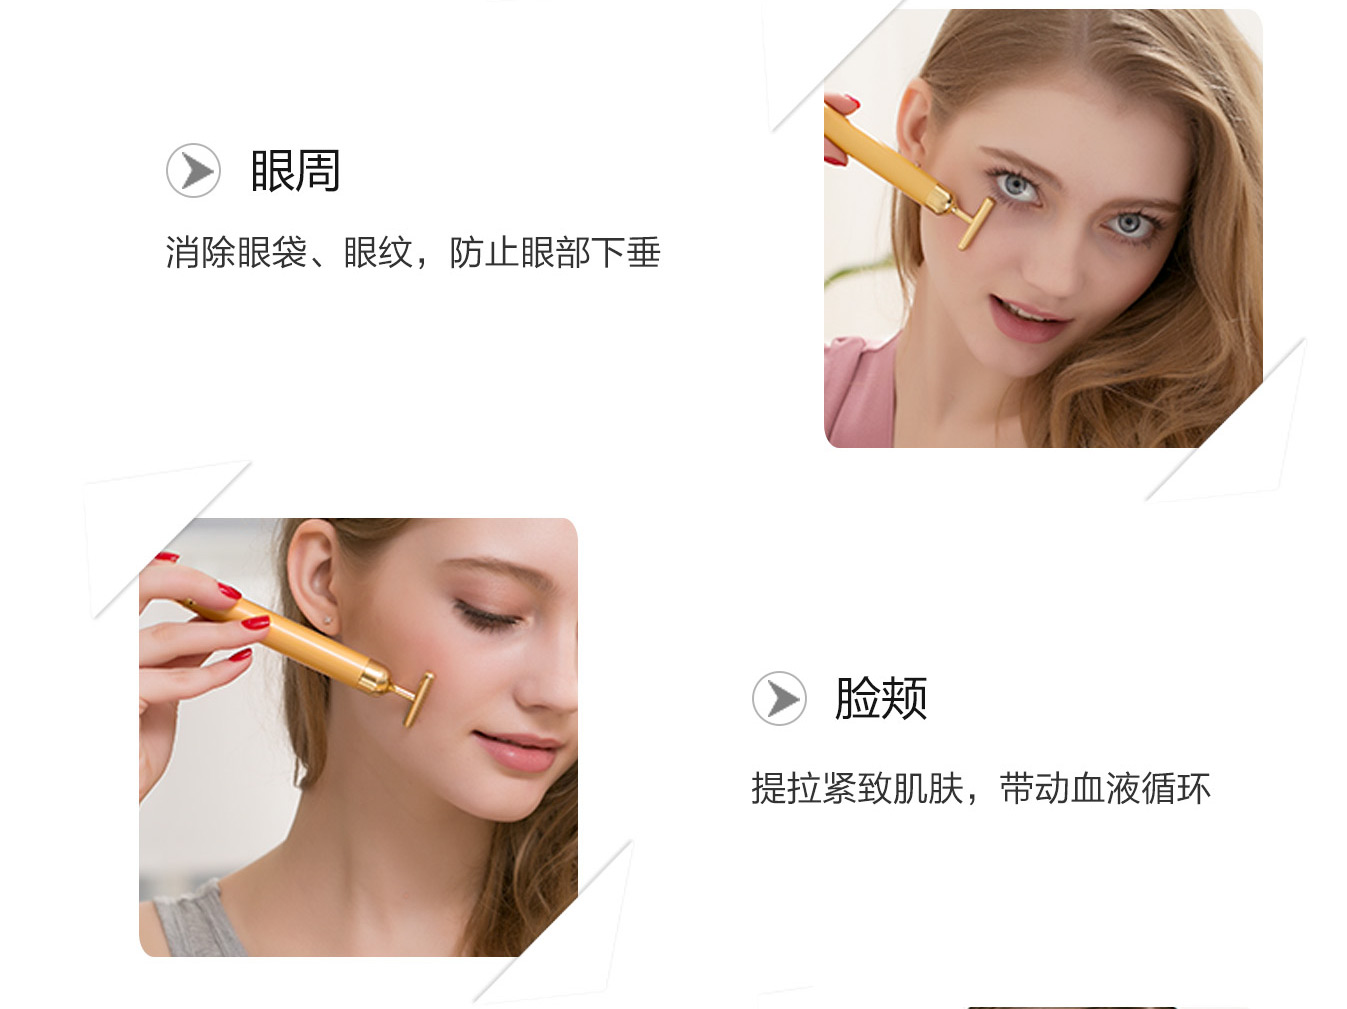 24K金美容棒 康熙来了推荐黄金美容棒瘦脸美眼的使用方法